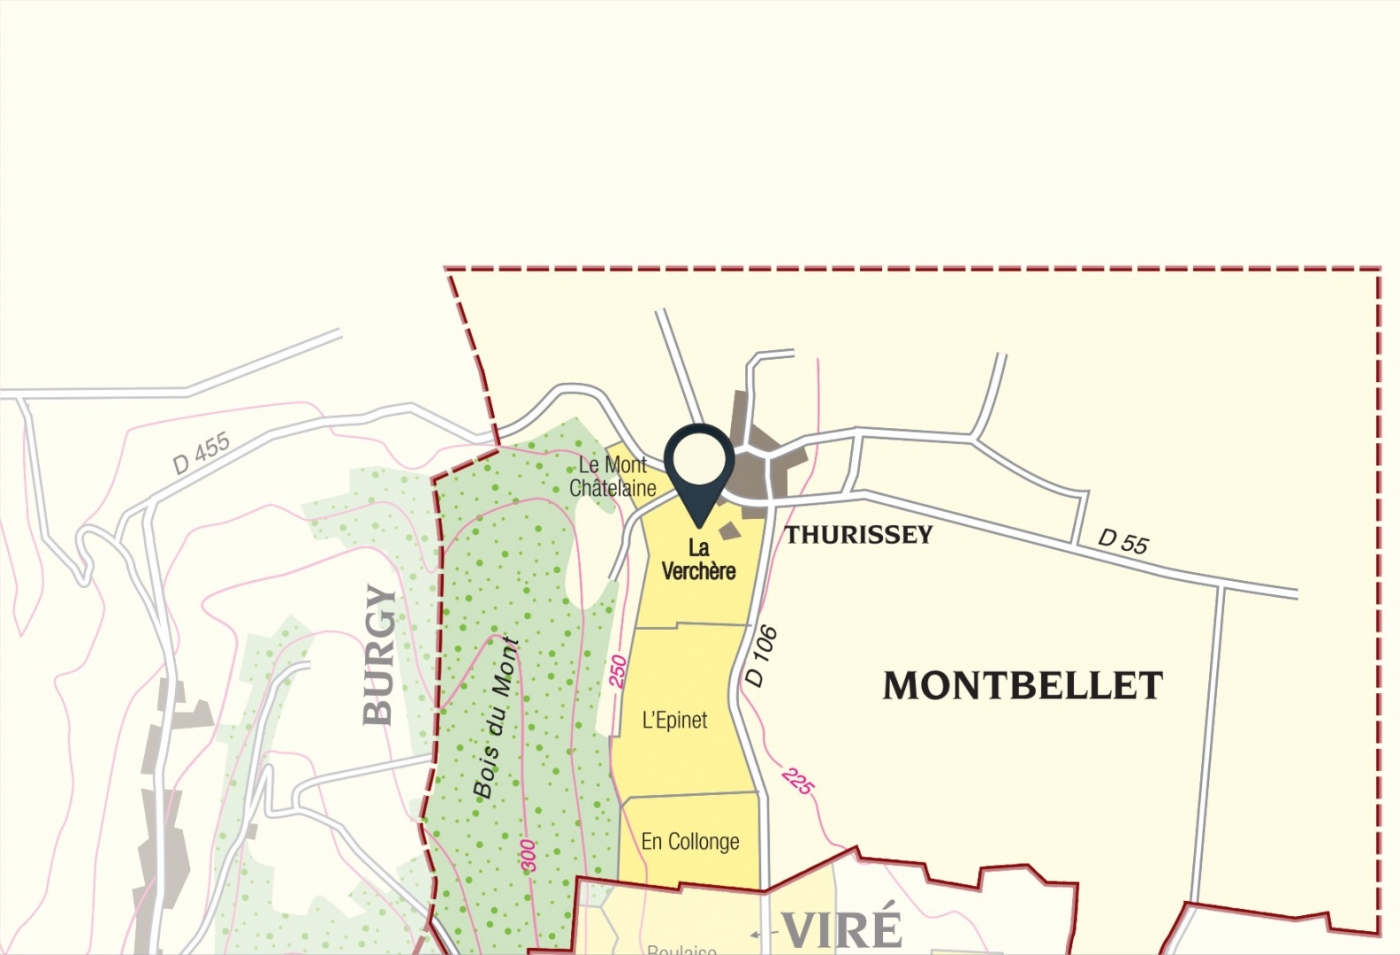 Carte parcelle vin - Viré-Clessé Climat « La Verchère » Bret Brothers